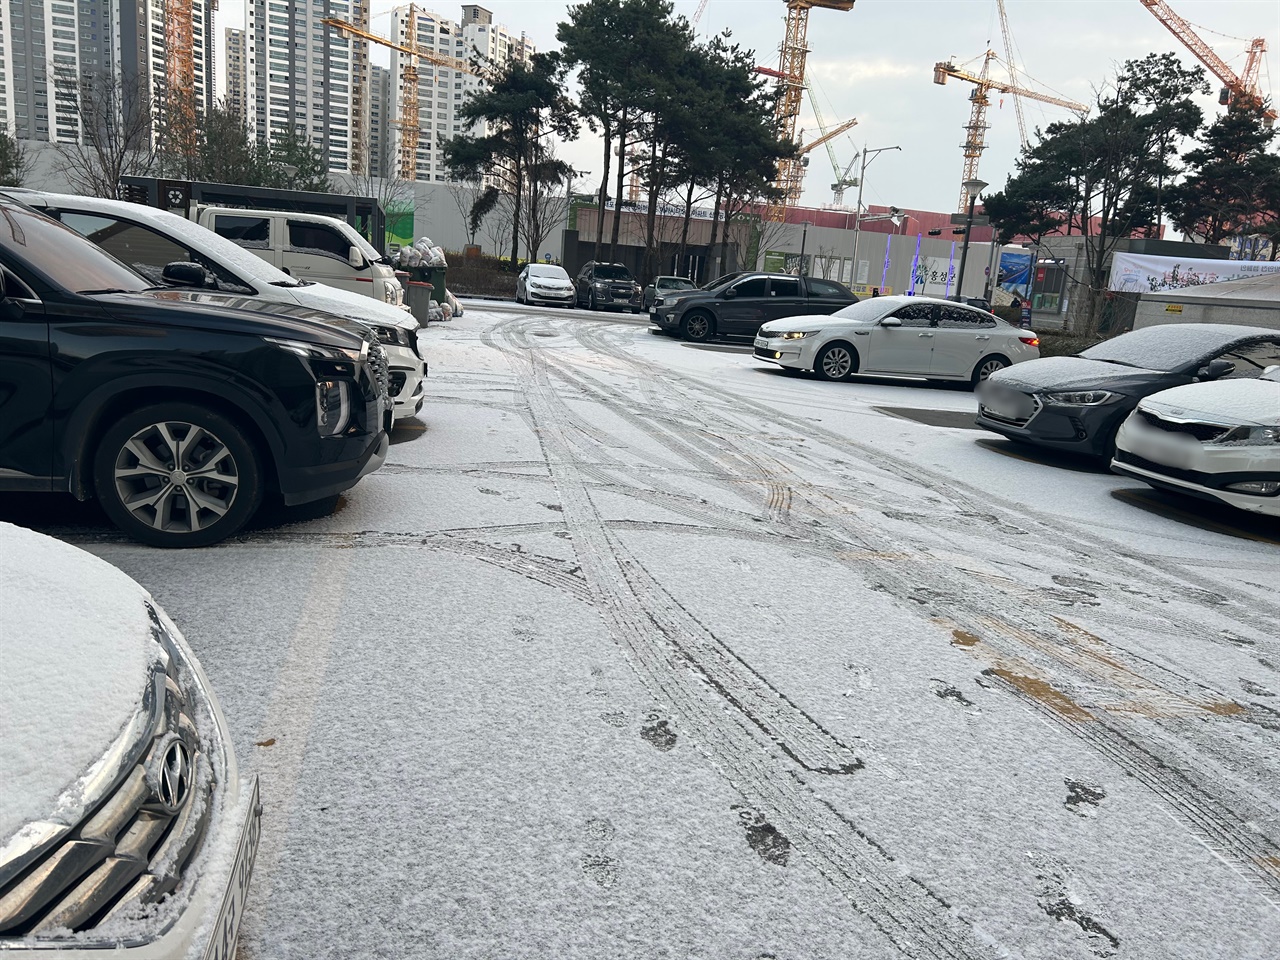 대설을 하루 앞둔 가운데 홍성지역에 많은 눈이 내렸다. 6일 홍성에는 밤사이 내린 눈으로 온통 하얗게 변했다.